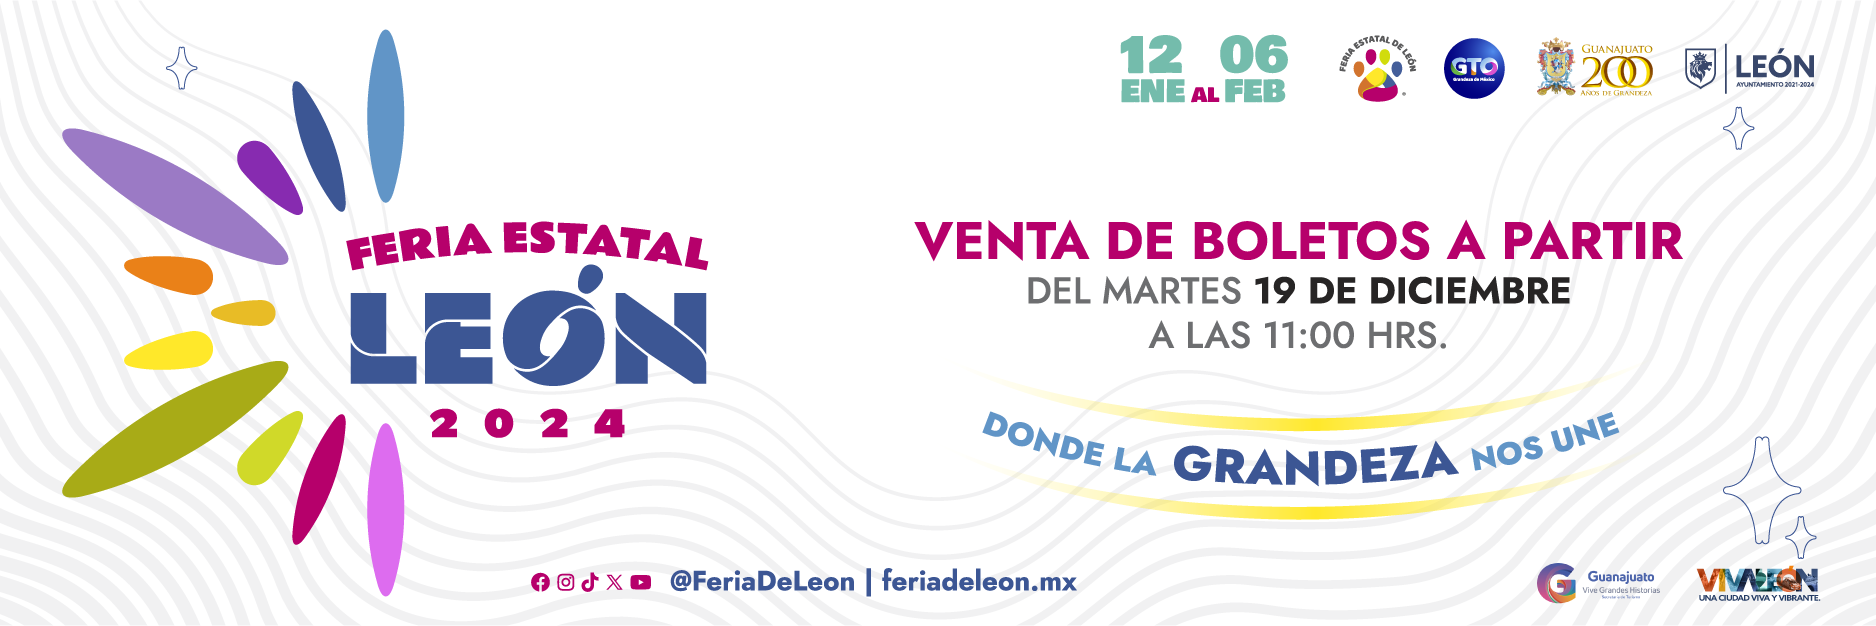 Feria de León by Ticketone